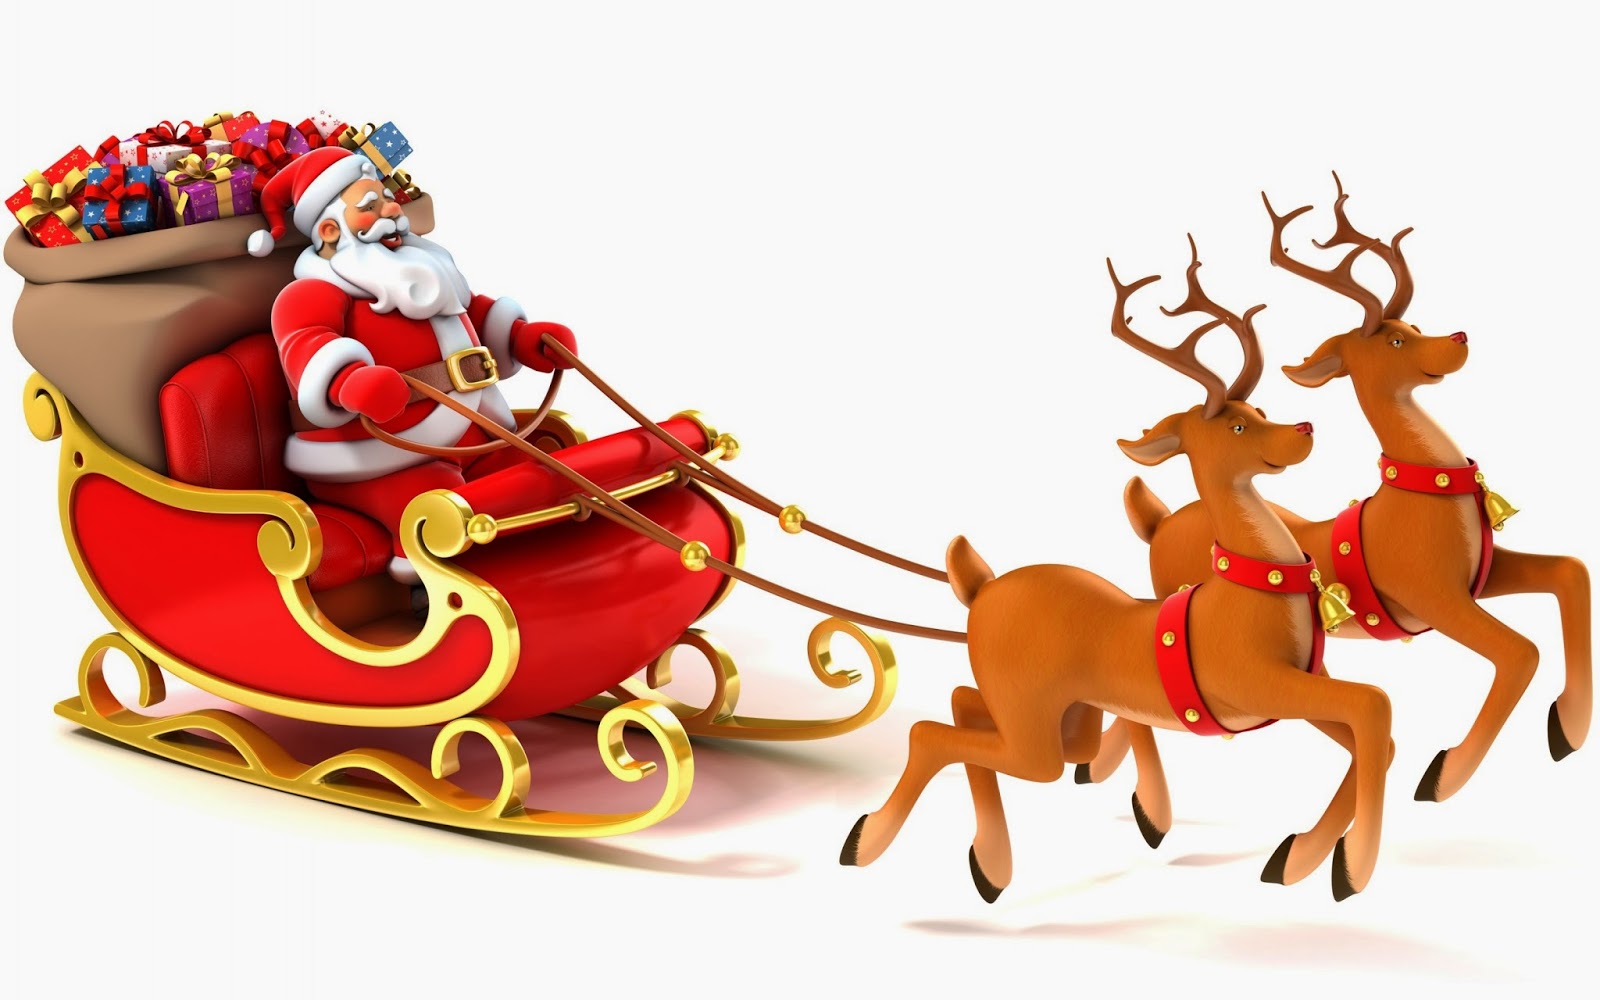 ... reindeer and santa claus 